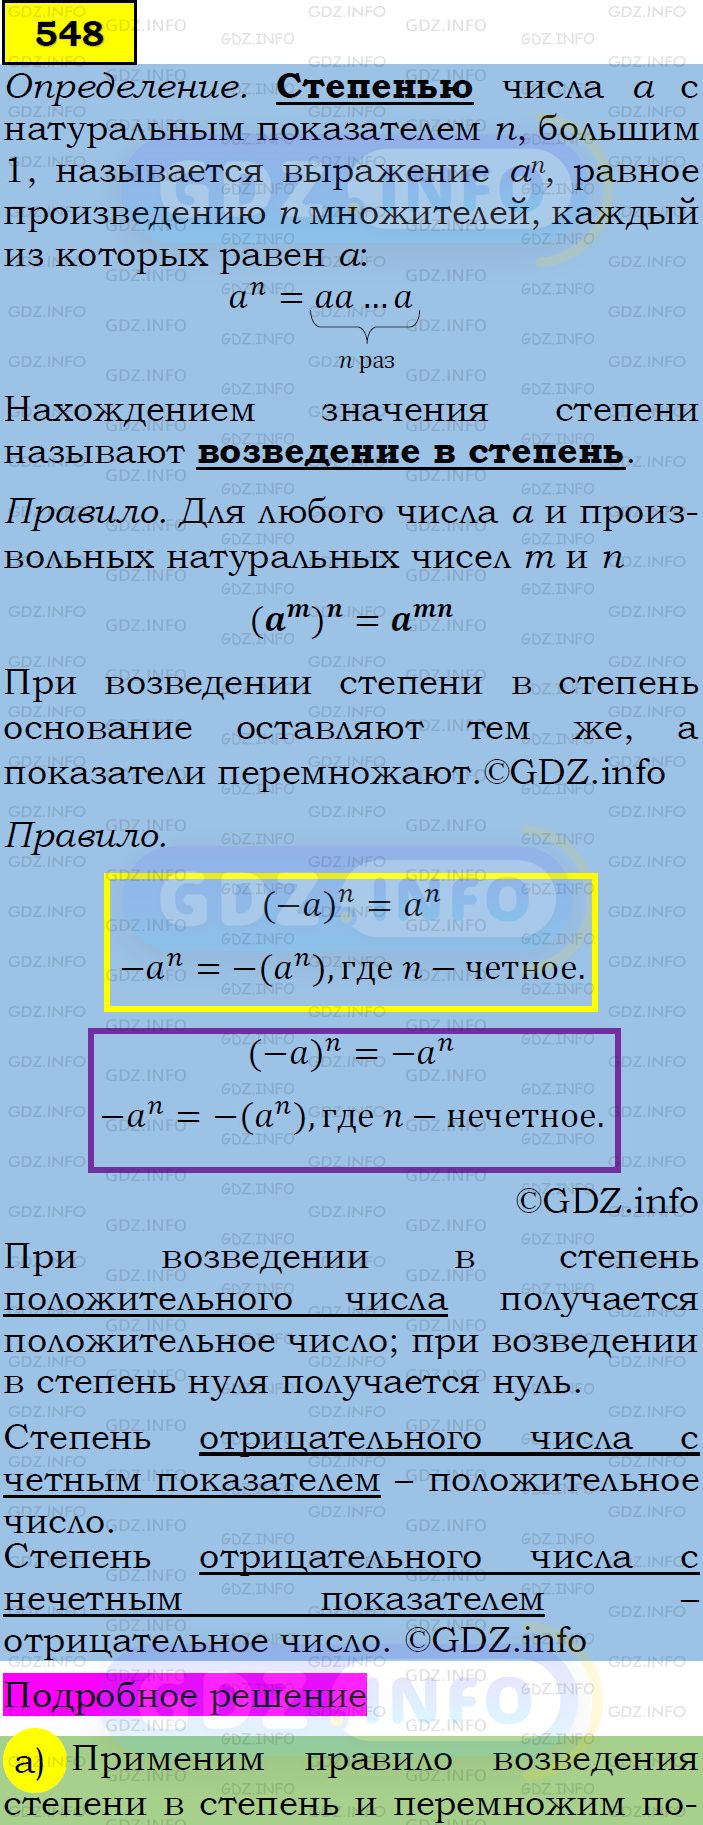 Фото подробного решения: Номер задания №548 из ГДЗ по Алгебре 7 класс: Макарычев Ю.Н.